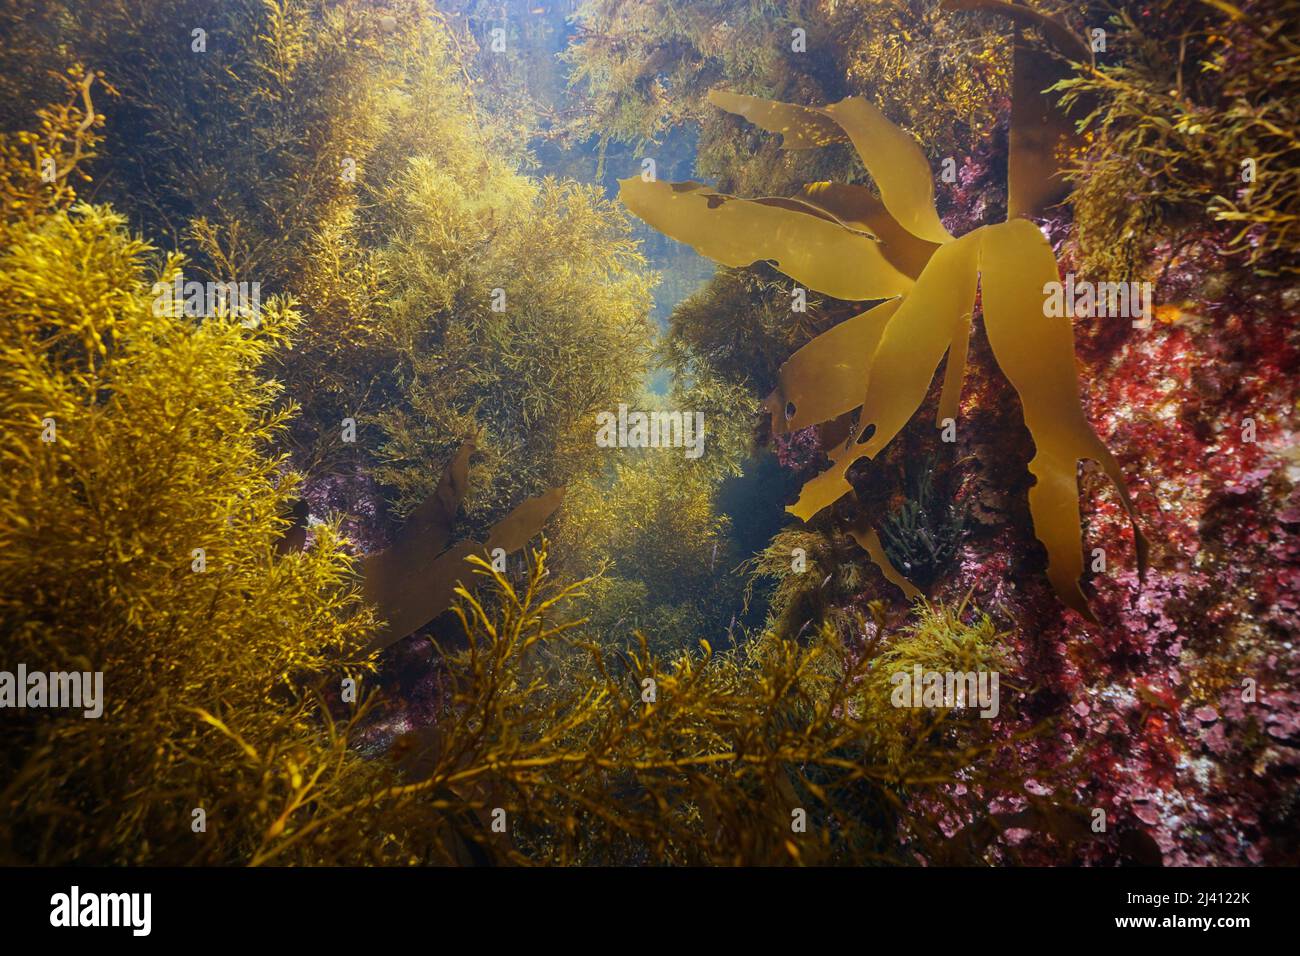 Algues marines algues sous l'océan Atlantique, Espagne, Galice Banque D'Images